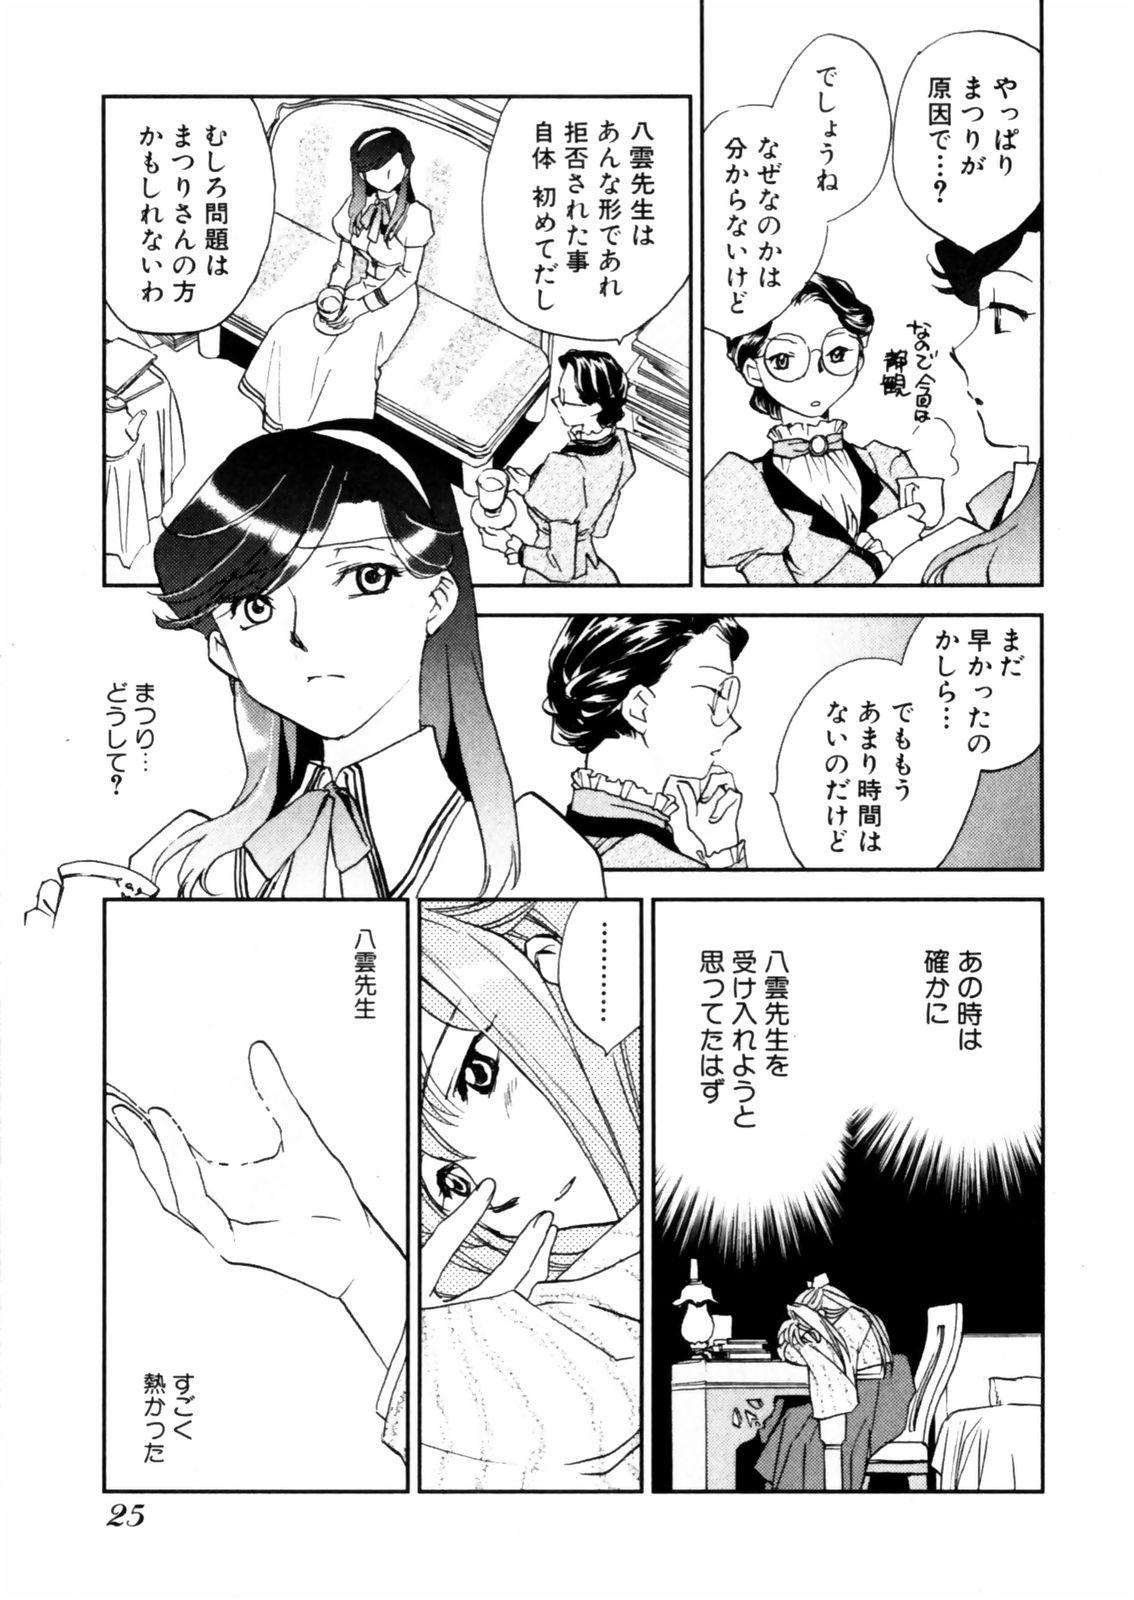 [Okano Ahiru] Hanasake ! Otome Juku (Otome Private Tutoring School) Vol.2 26